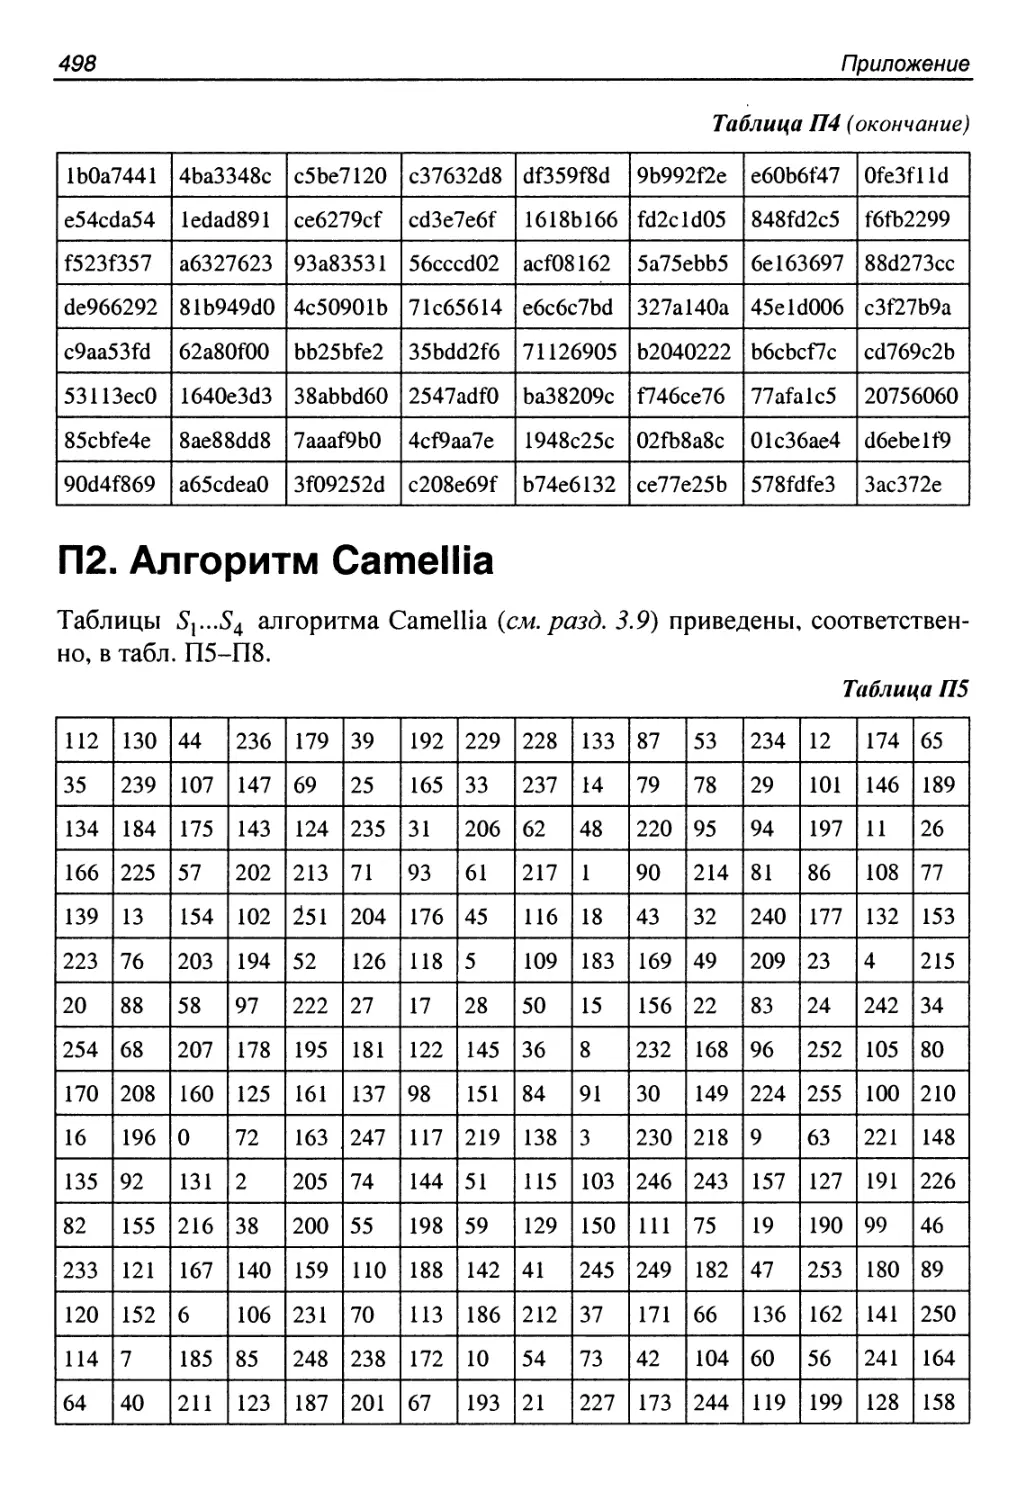 П2. Алгоритм Camellia